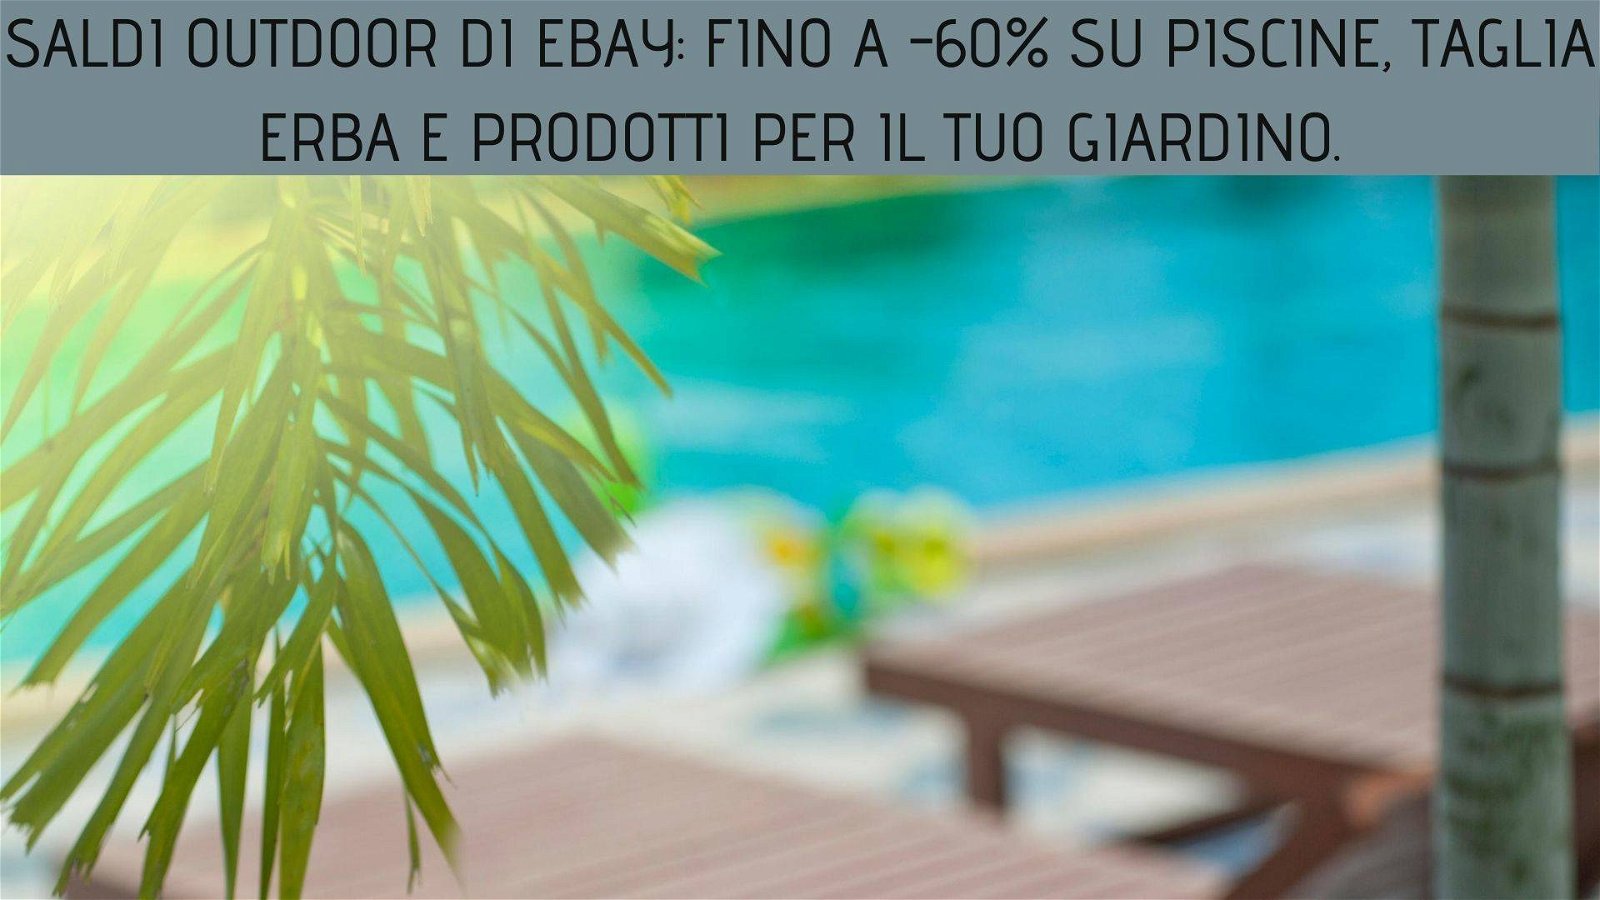 Immagine di Saldi outdoor di eBay: fino a -60% su piscine, taglia erba e prodotti per il tuo giardino